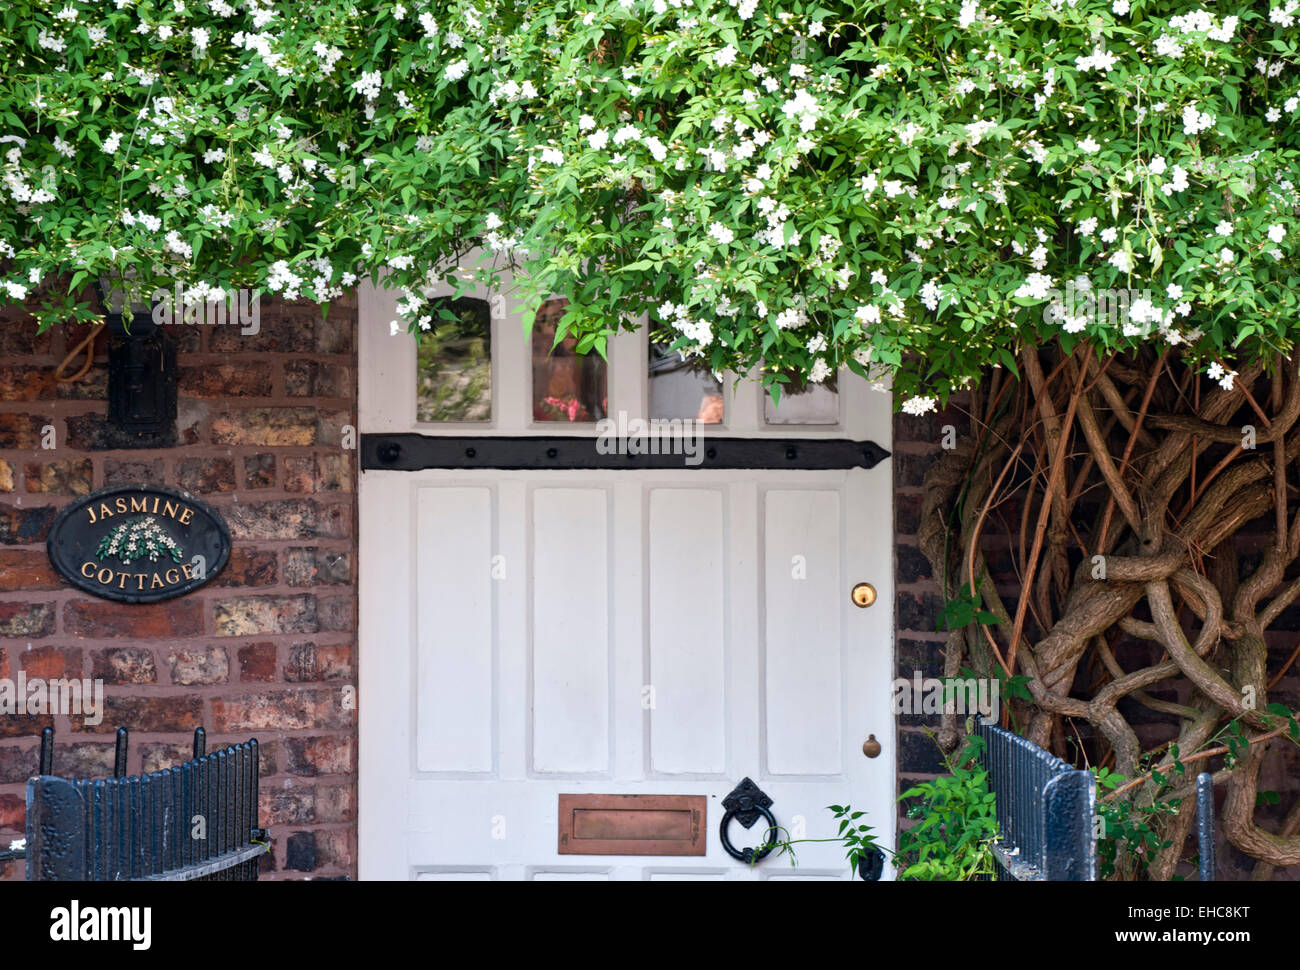 Jazmín ( Jasminum) por encima de la puerta delantera del jazmín Cottage, Gran Budworth, Cheshire, Inglaterra, Reino Unido. Foto de stock